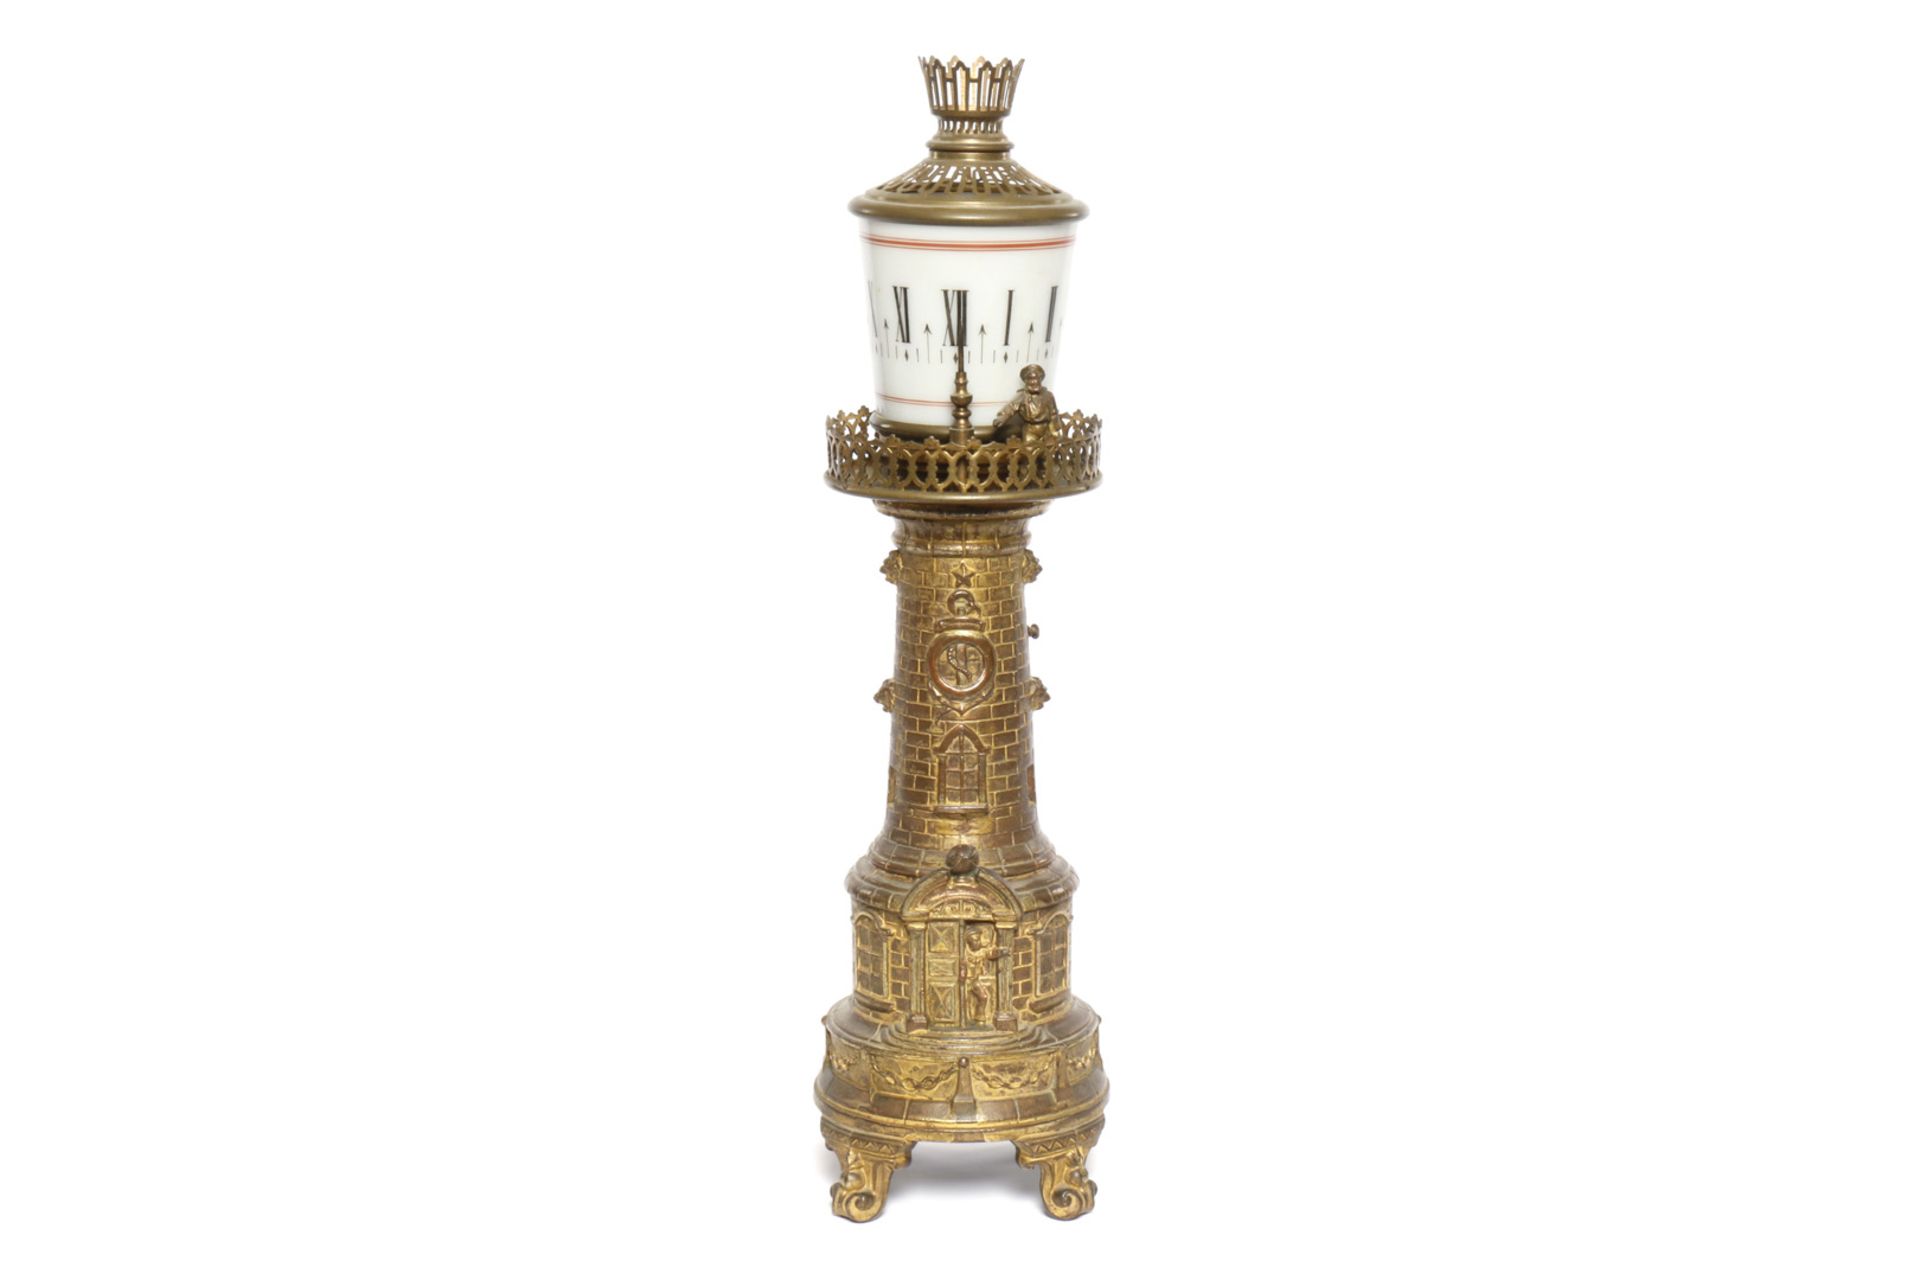 Leuchtturmuhr, Guss, vergoldet, um 1900, mit dreh- und beleuchtbarem Glasaufsatz mit römischen